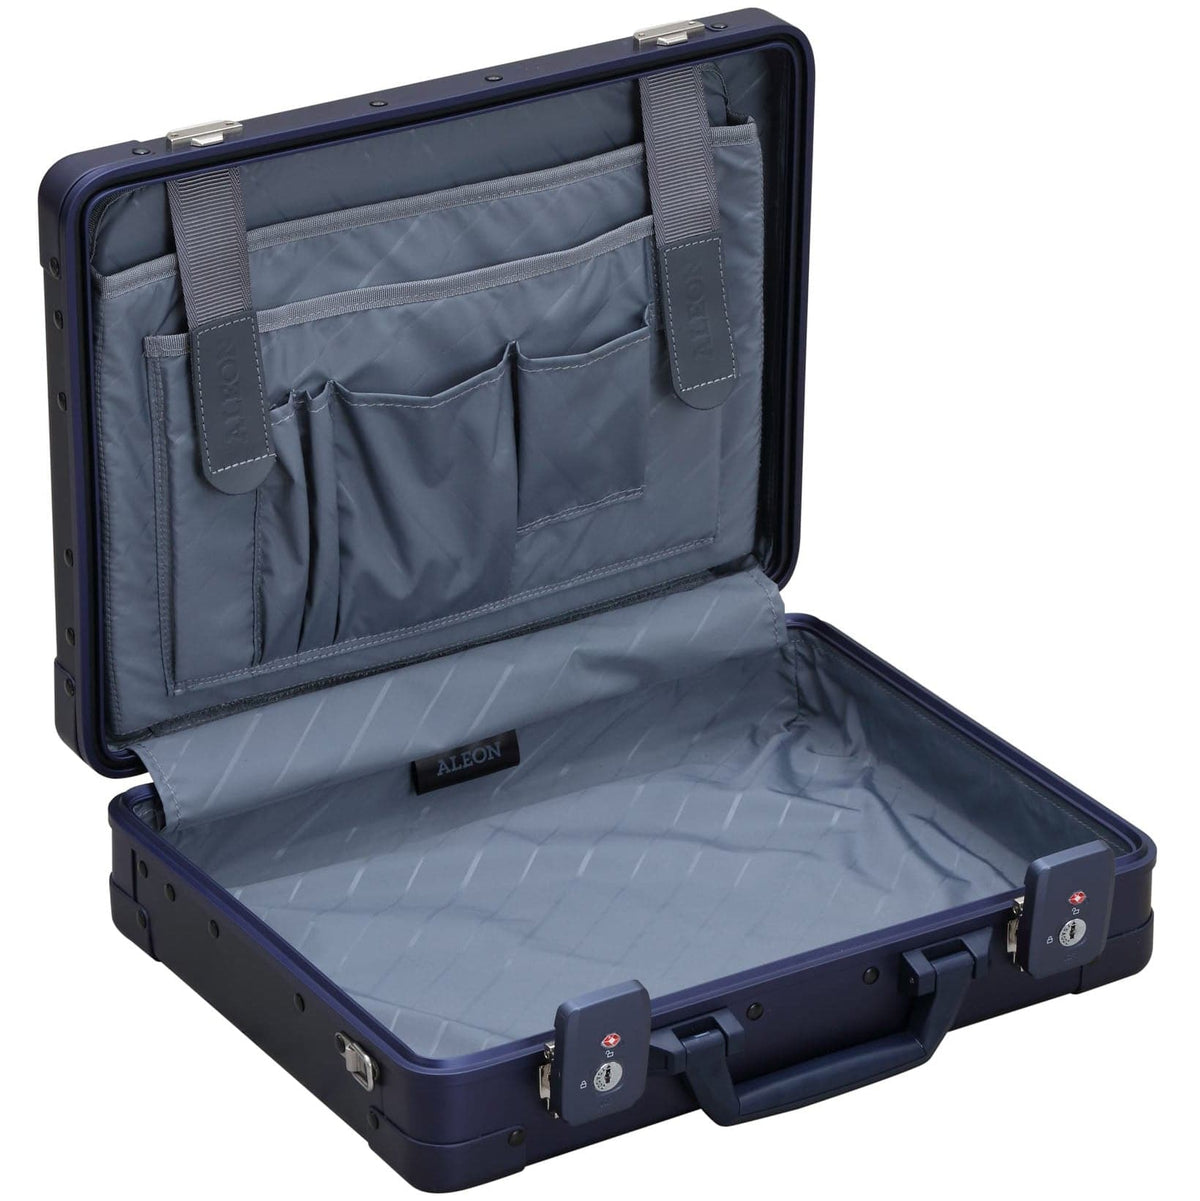 Aleon 15" Aluminum Hardside Business Briefcase